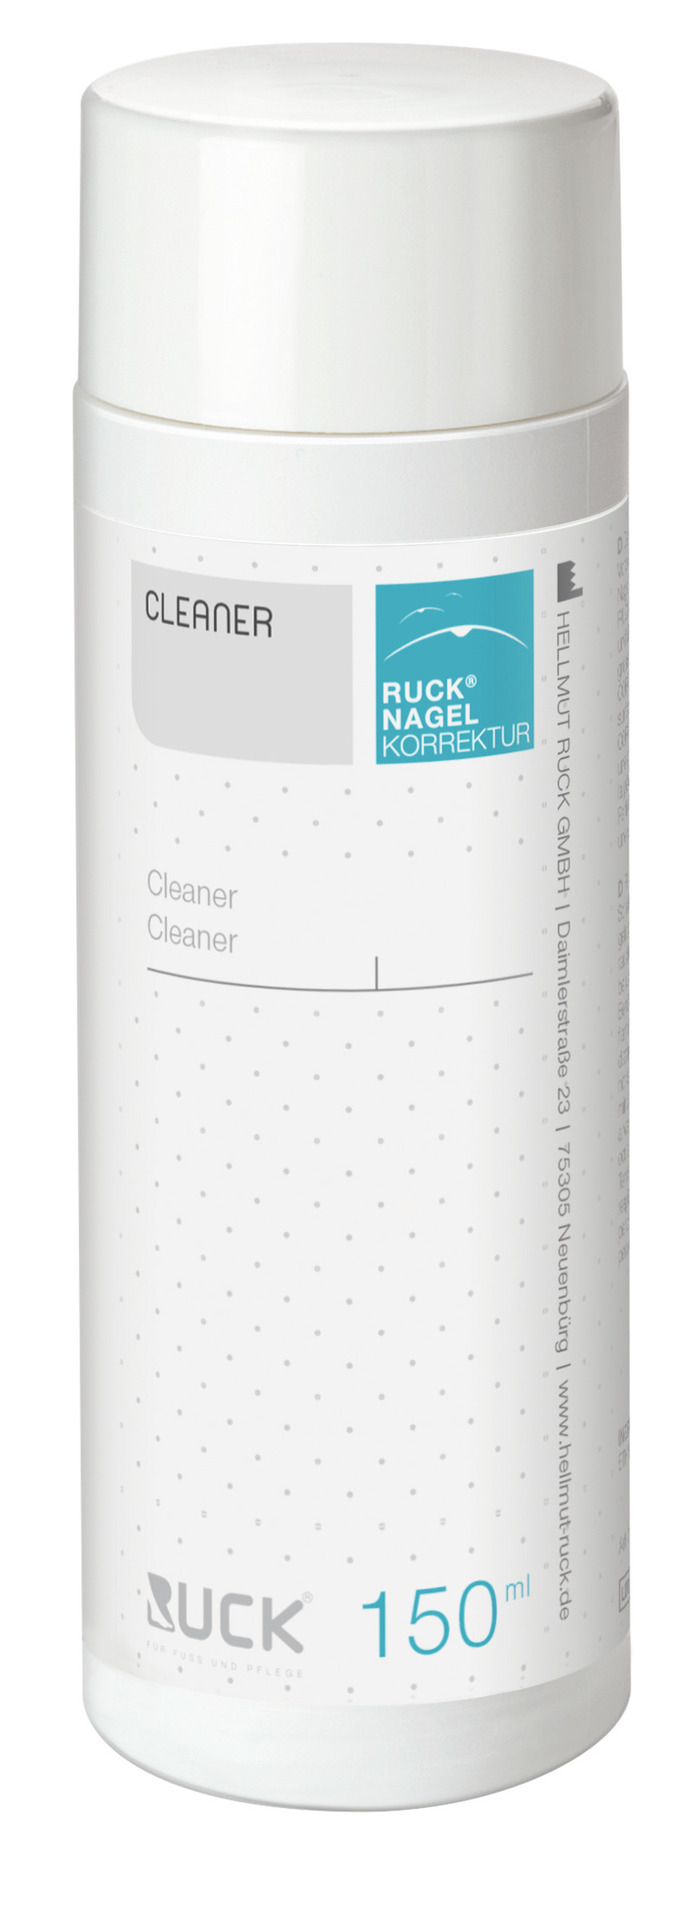 RUCK NAGELKORREKTUR Cleaner | 150 ml